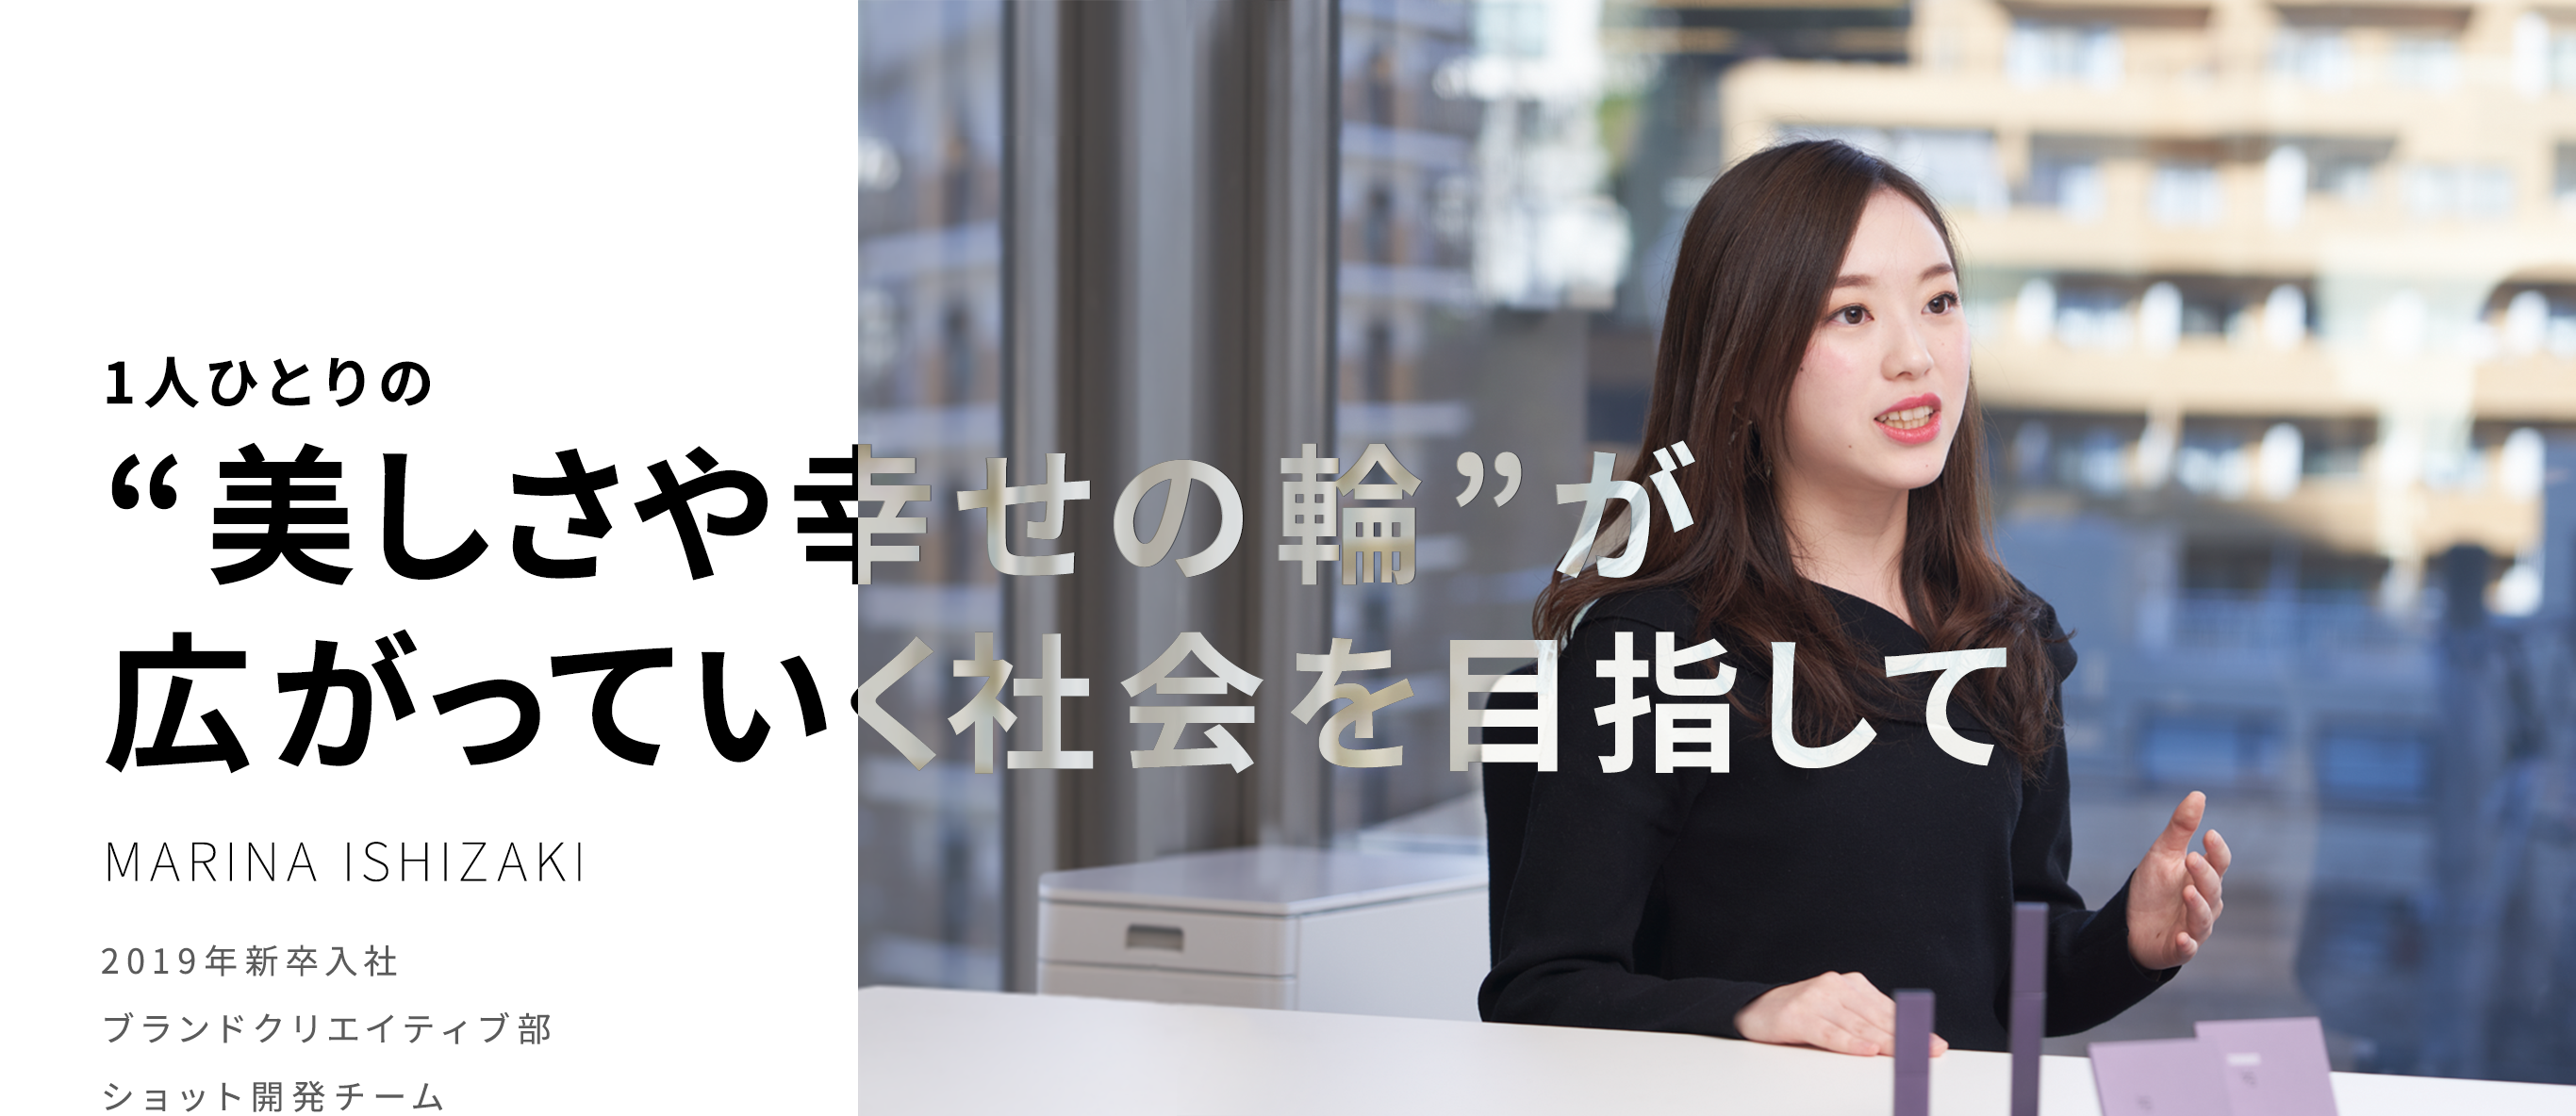 1人ひとりの"美しさや幸せの輪"が広がっていく社会を目指して　MARINA ISHIZAKI 2019年新卒入社 ブランドクリエイティブ部 ショット開発チーム